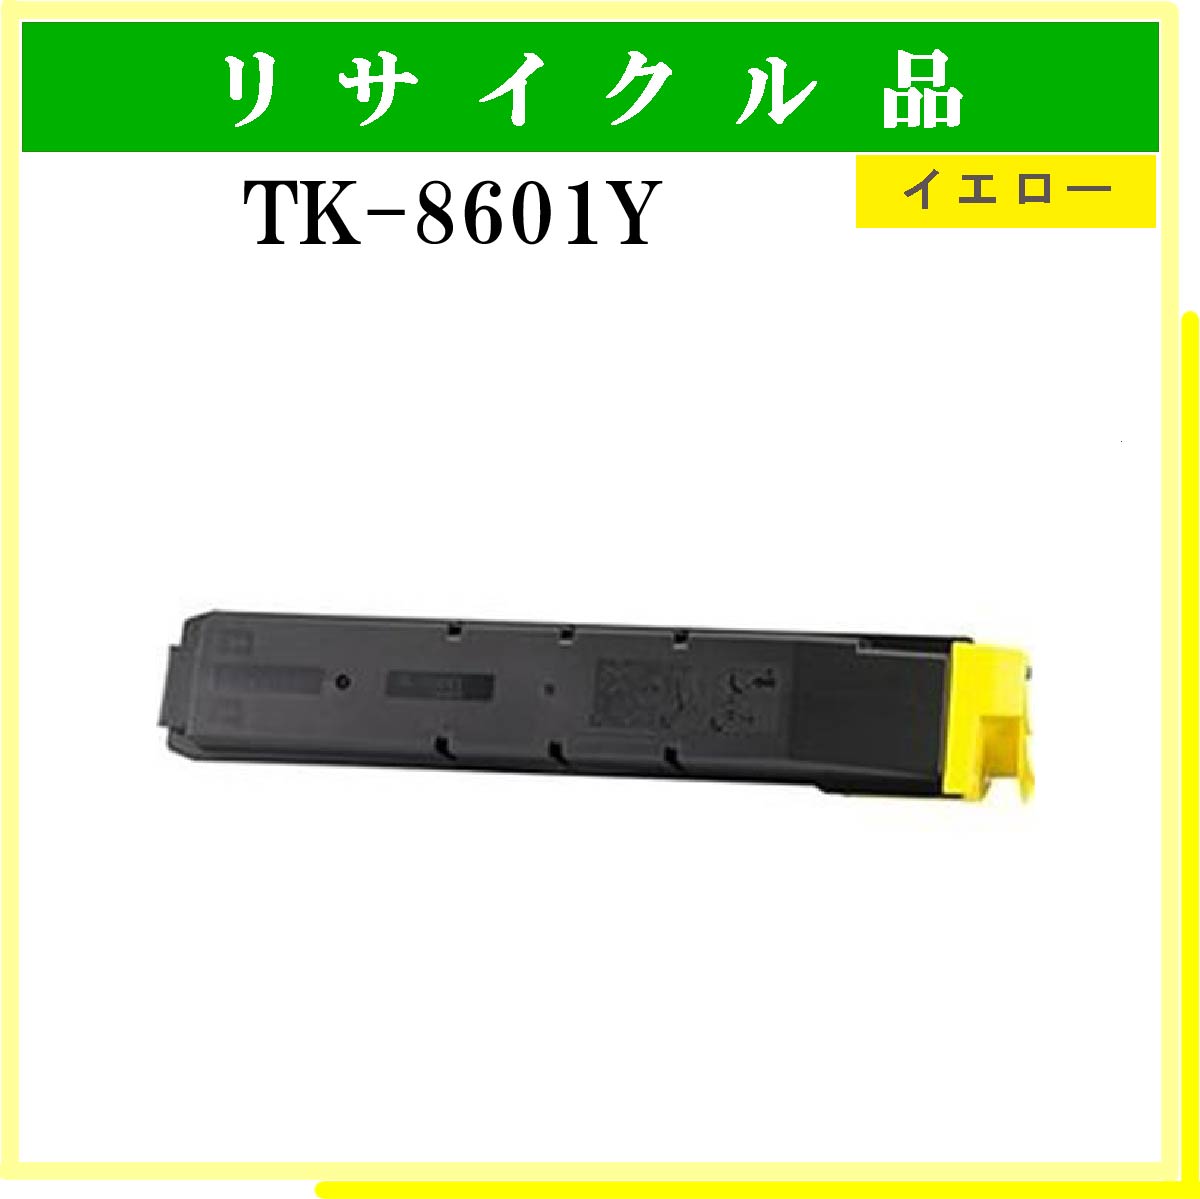 TK-8601Y